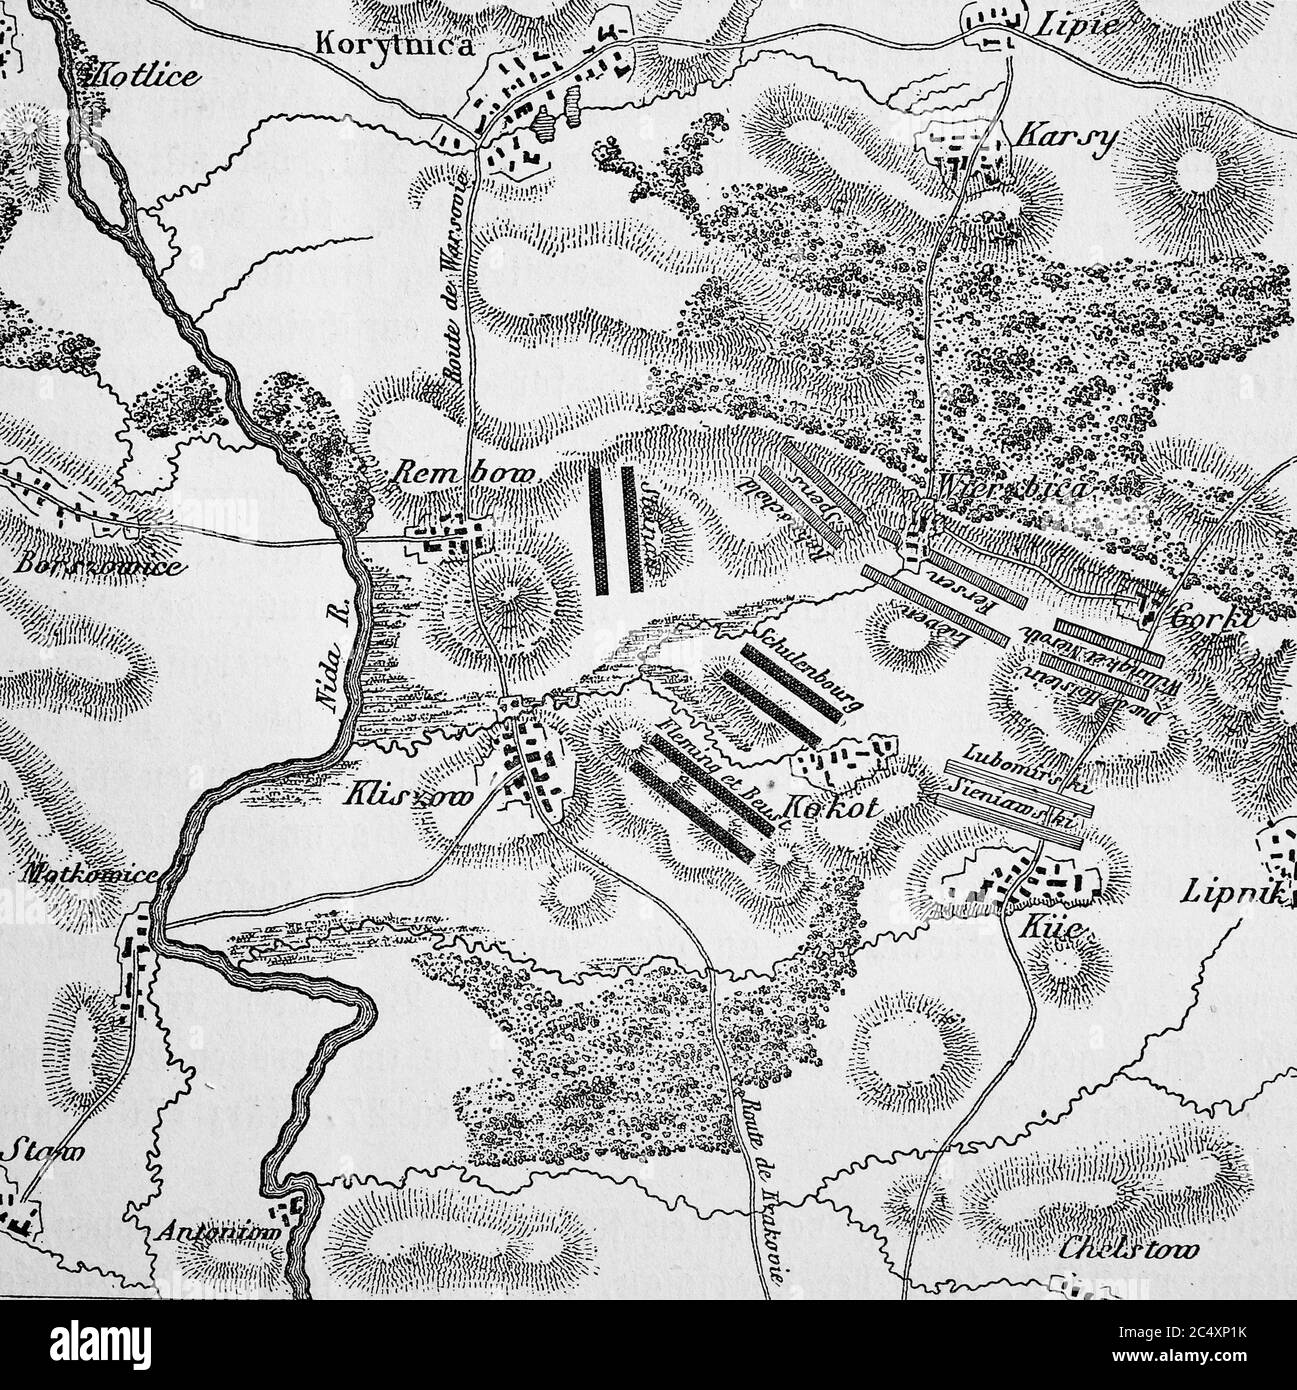 Plan of the battle of kliszów on 19 July 1702 Poland, in the battle of kliszów the armies of Charles XII stood on 19 July 1,702th and Augustus II. against. Klissow is a place south of Kielce  /  Plan der Schlacht bei Klissow am 19. Juli 1702, Polen, In der Schlacht bei Klissow standen sich am 19. Juli 1702 die Armeen von Karl XII. und August II. gegenueber. Klissow ist ein Ort suedlich von Kielce Stock Photo